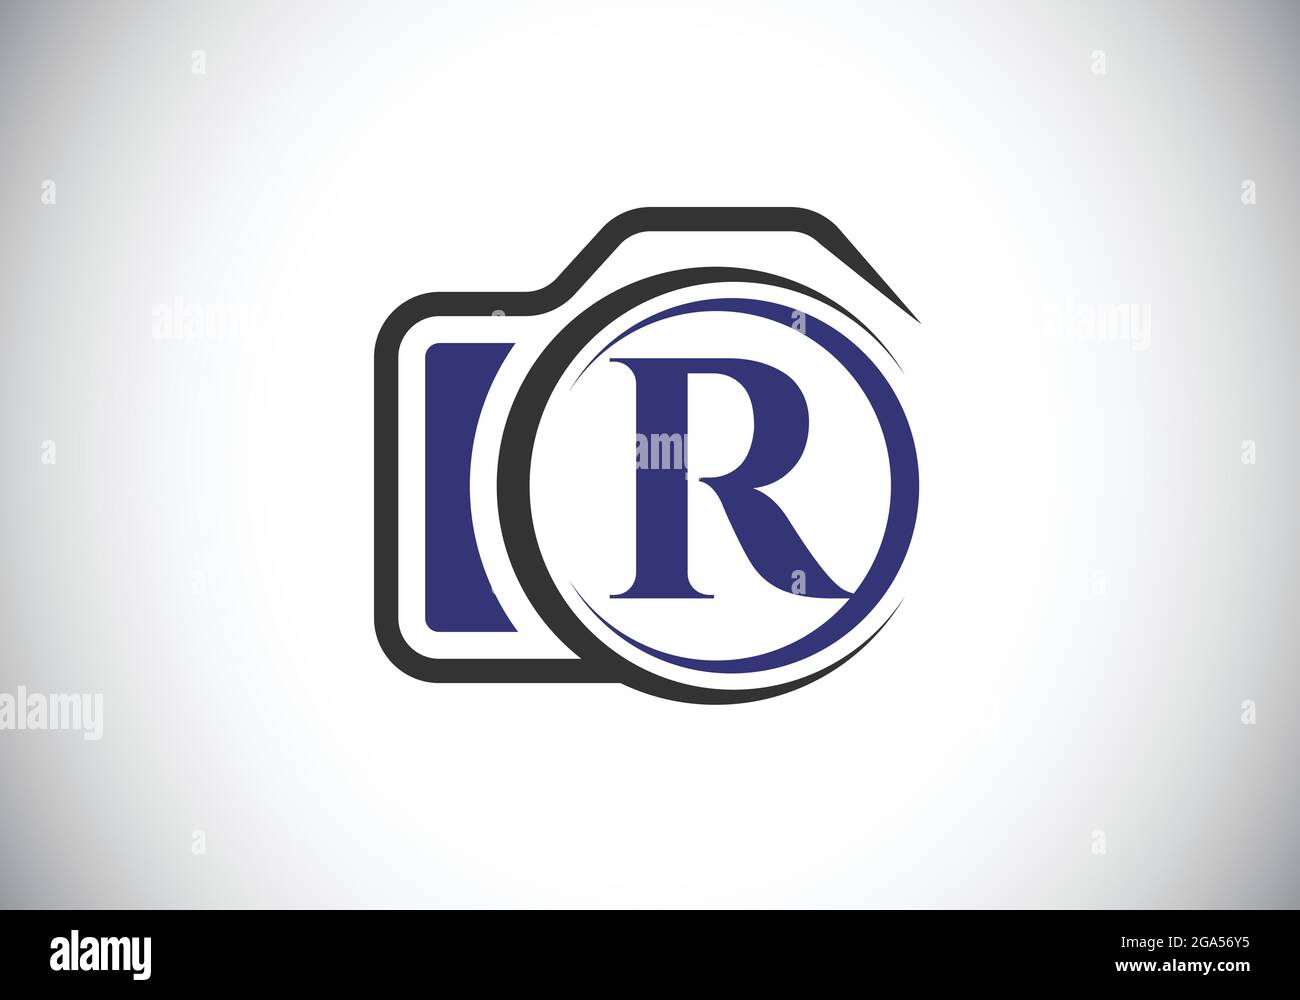 Lettre initiale du monogramme R avec une icône d'appareil photo. Illustration vectorielle du logo de photographie. Design moderne du logo pour les entreprises et les entreprises de photographie Illustration de Vecteur